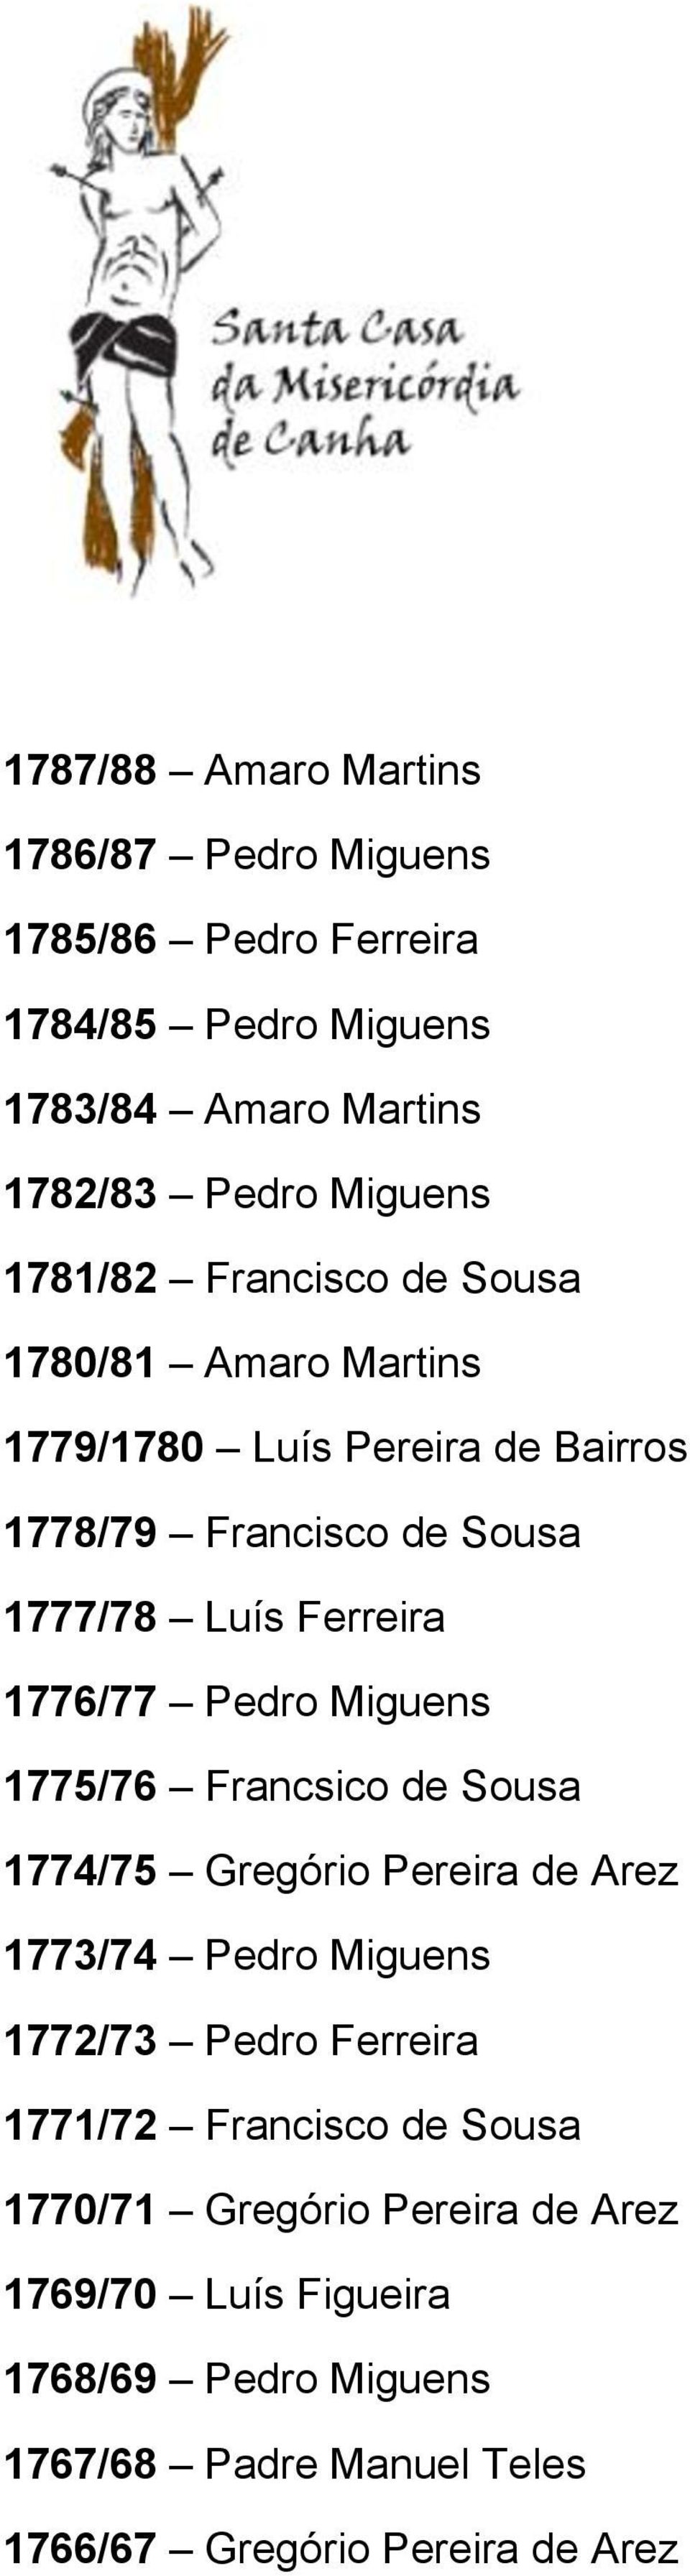 1776/77 Pedro Miguens 1775/76 Francsico de Sousa 1774/75 Gregório Pereira de Arez 1773/74 Pedro Miguens 1772/73 Pedro Ferreira 1771/72